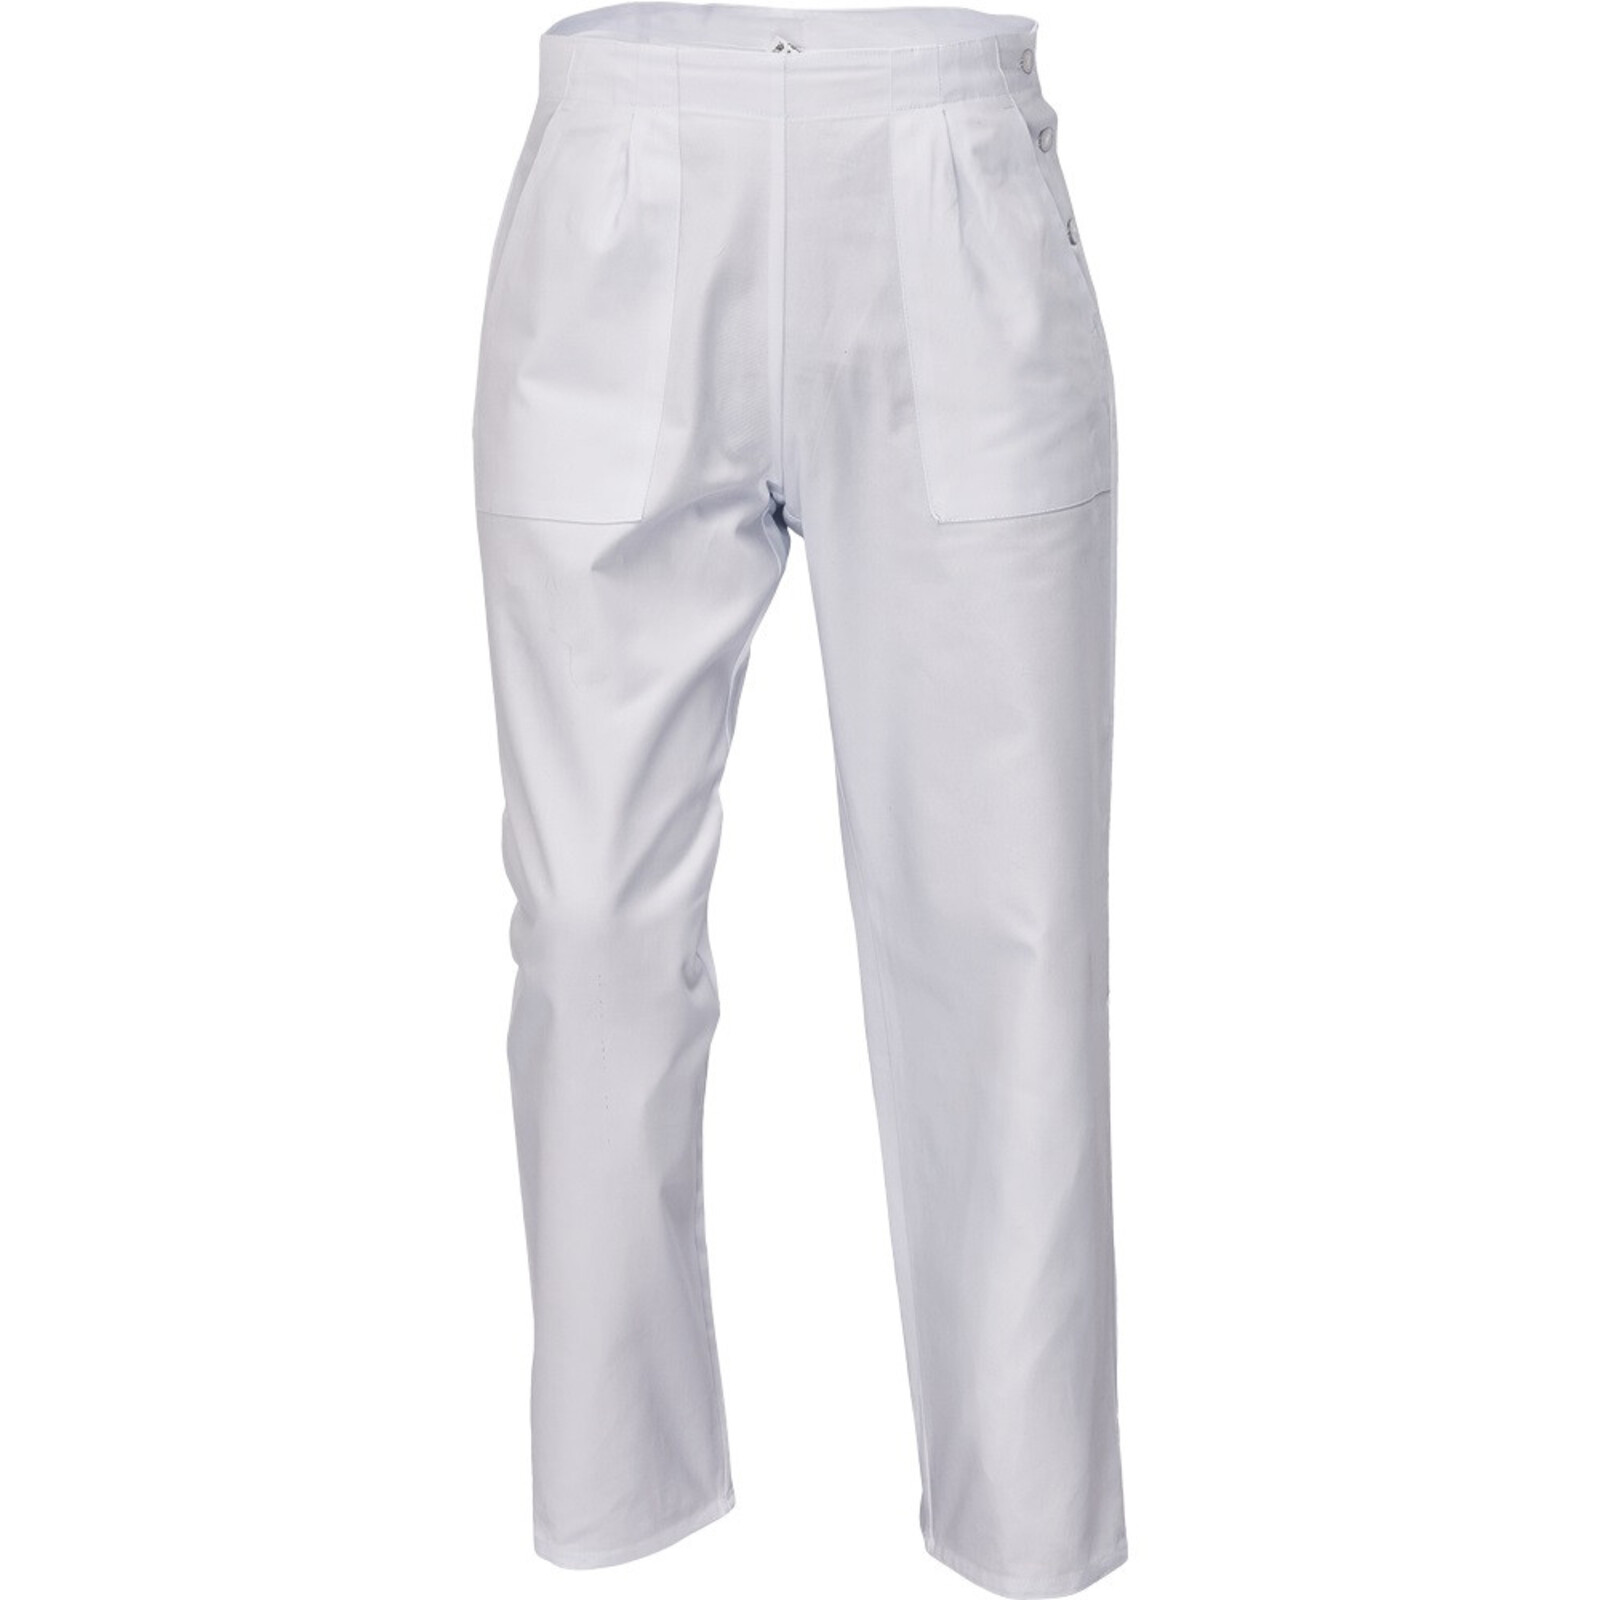 Dámske biele nohavice Apus Lady - veľkosť: 36